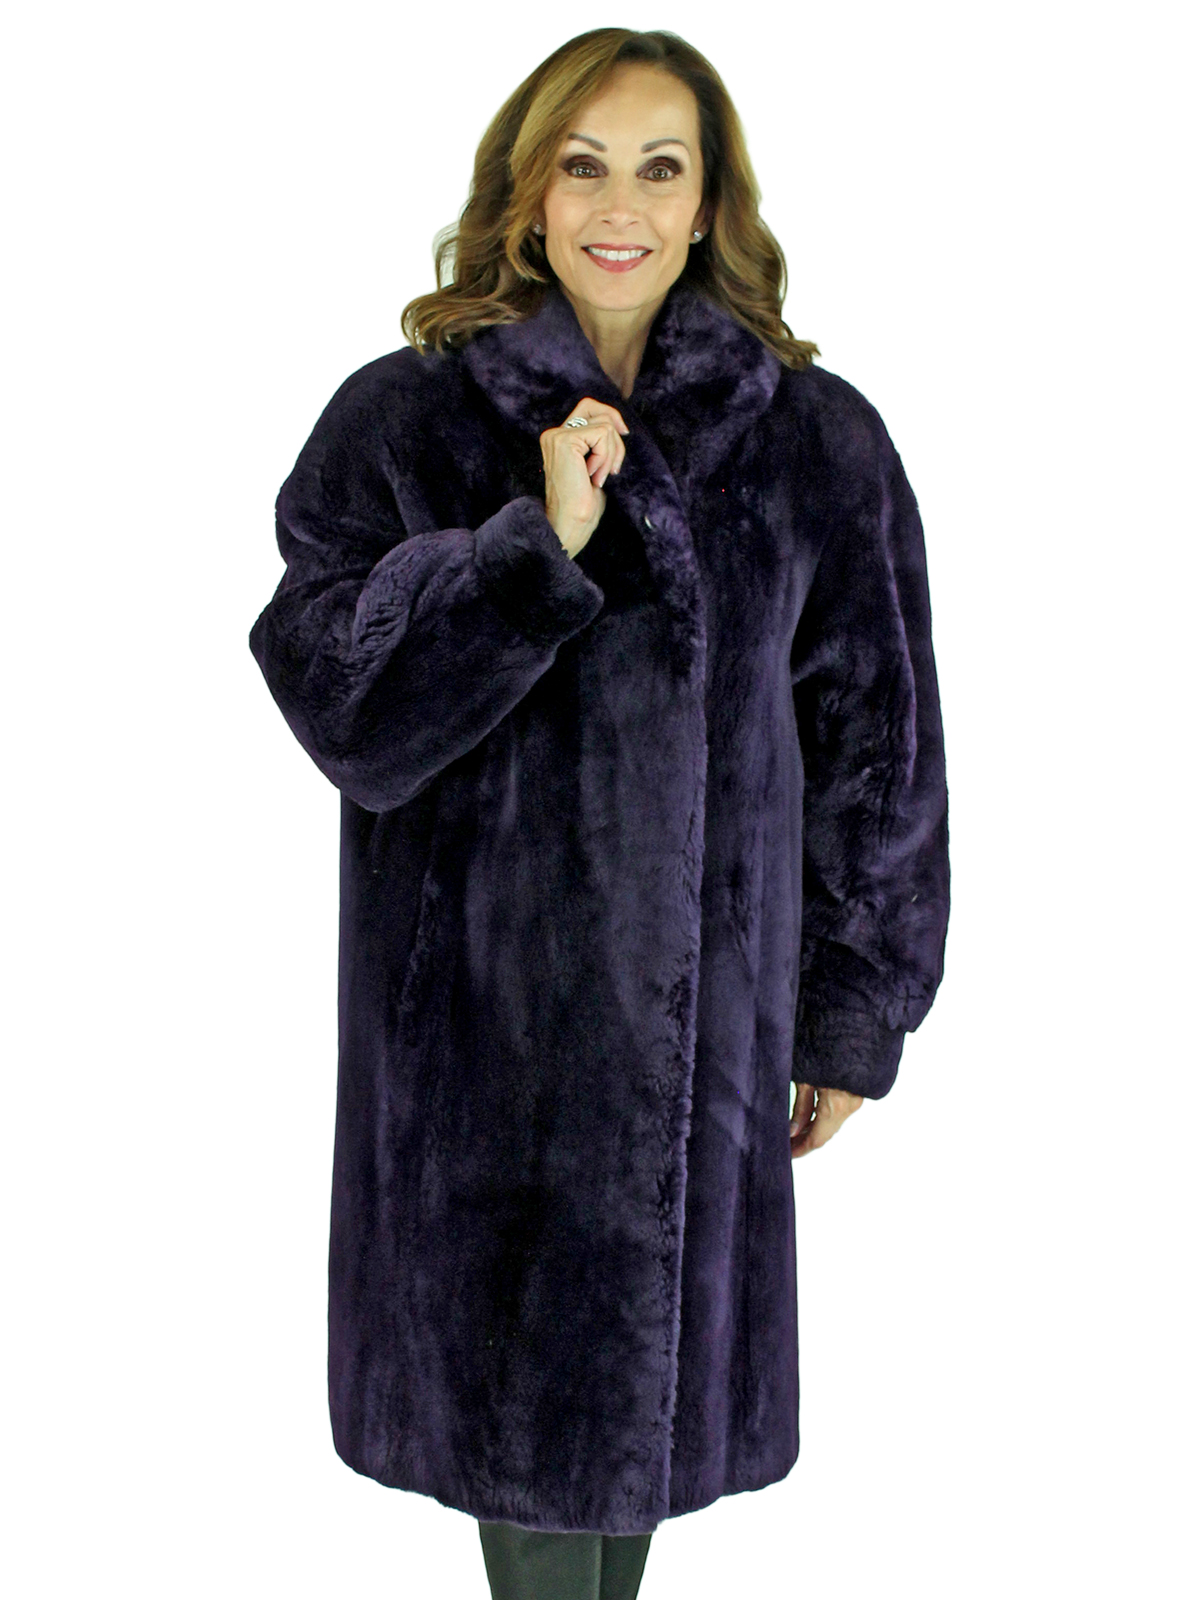 Purple Sheared Beaver 3/4 Fur Coat - Large| Estate Furs